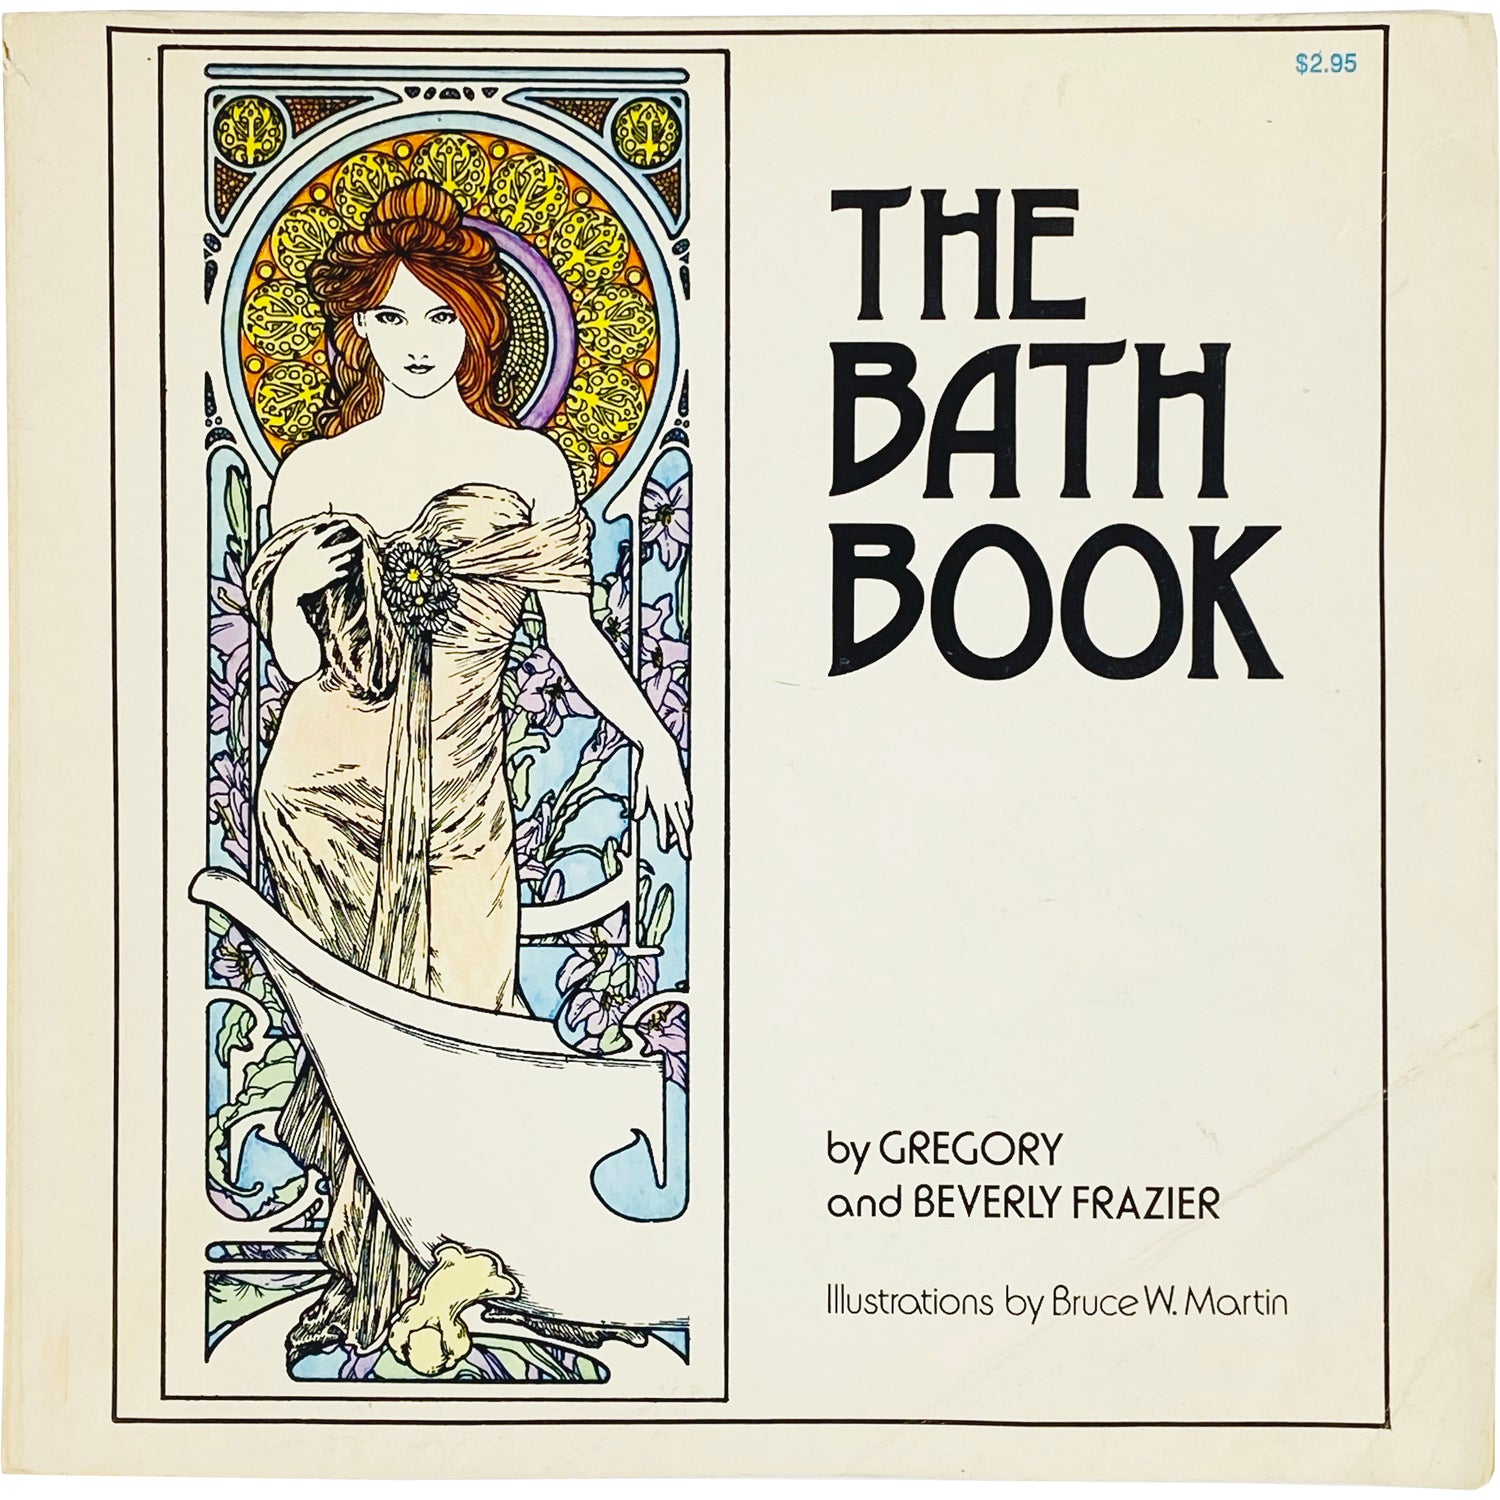 THE BATH BOOK